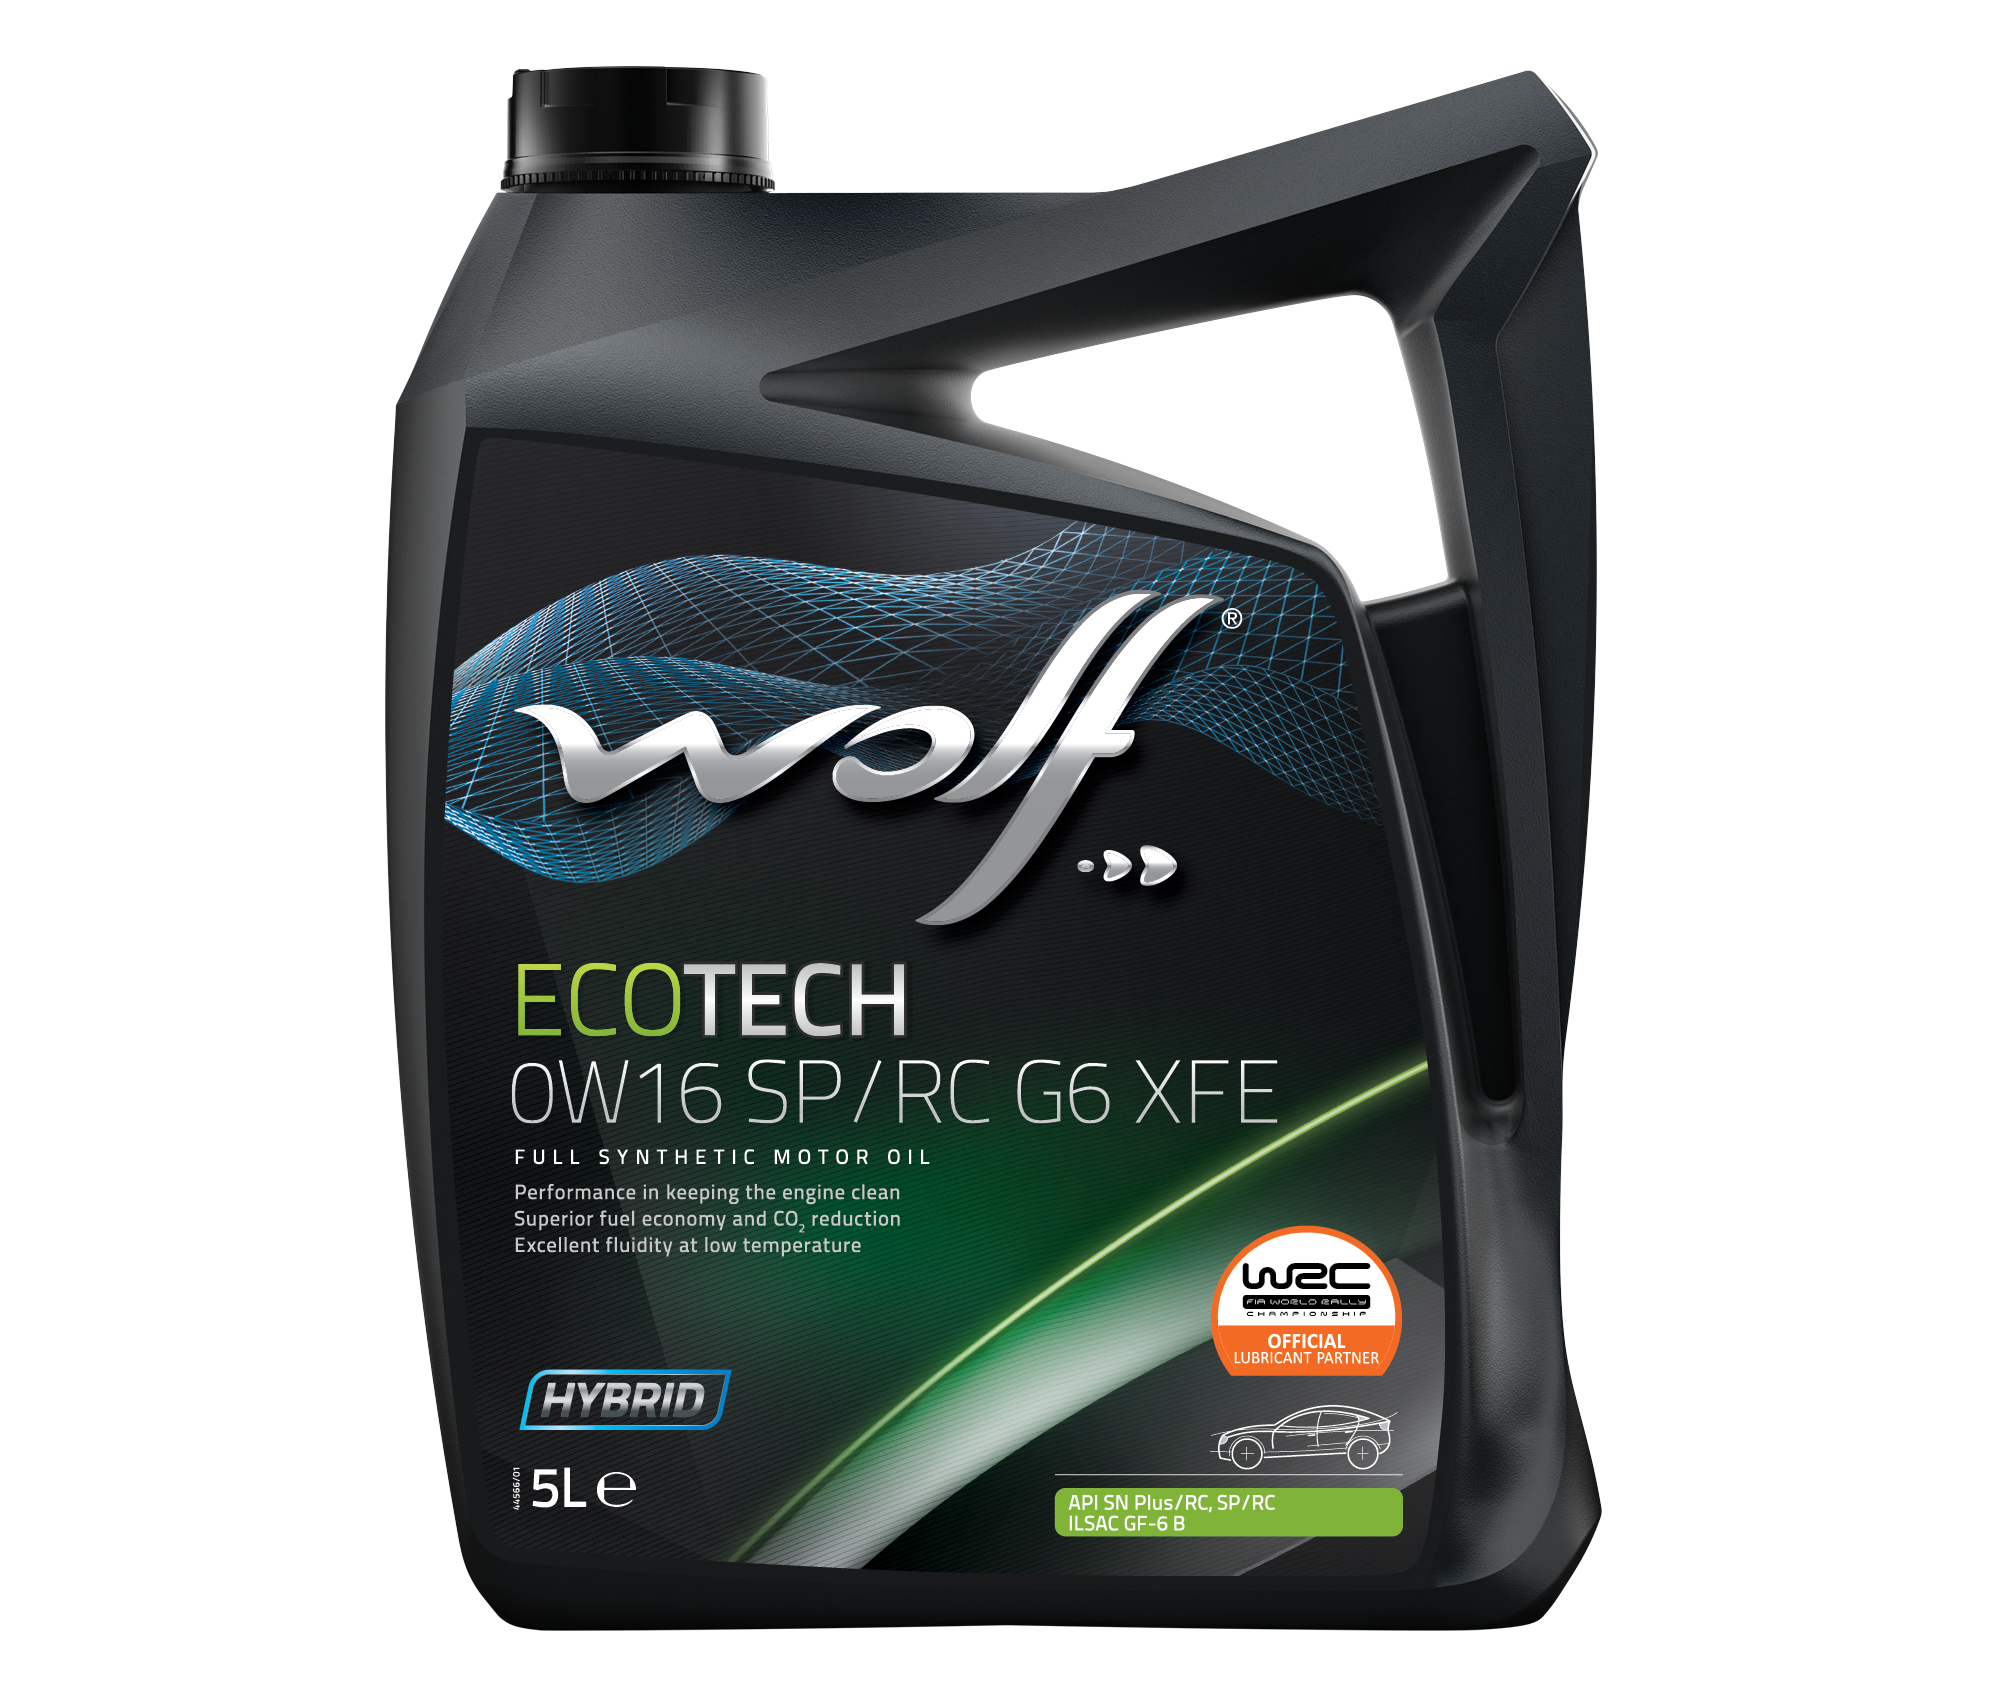 WOLF ECOTECH 0W-16 SP/RC G6 XFE: